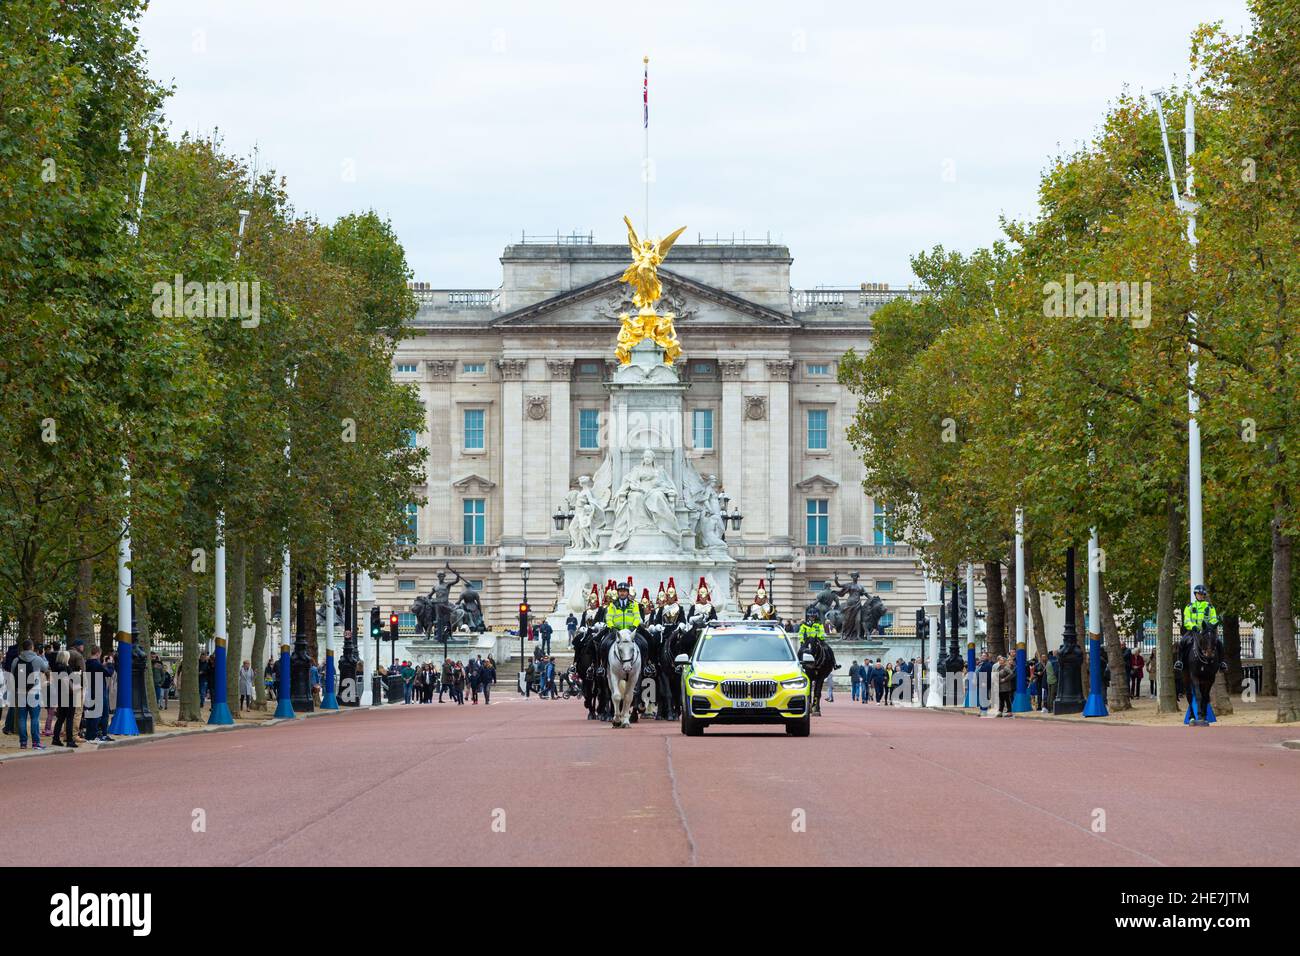 Horse guards and buckingham palace, london, uk Stock Photo